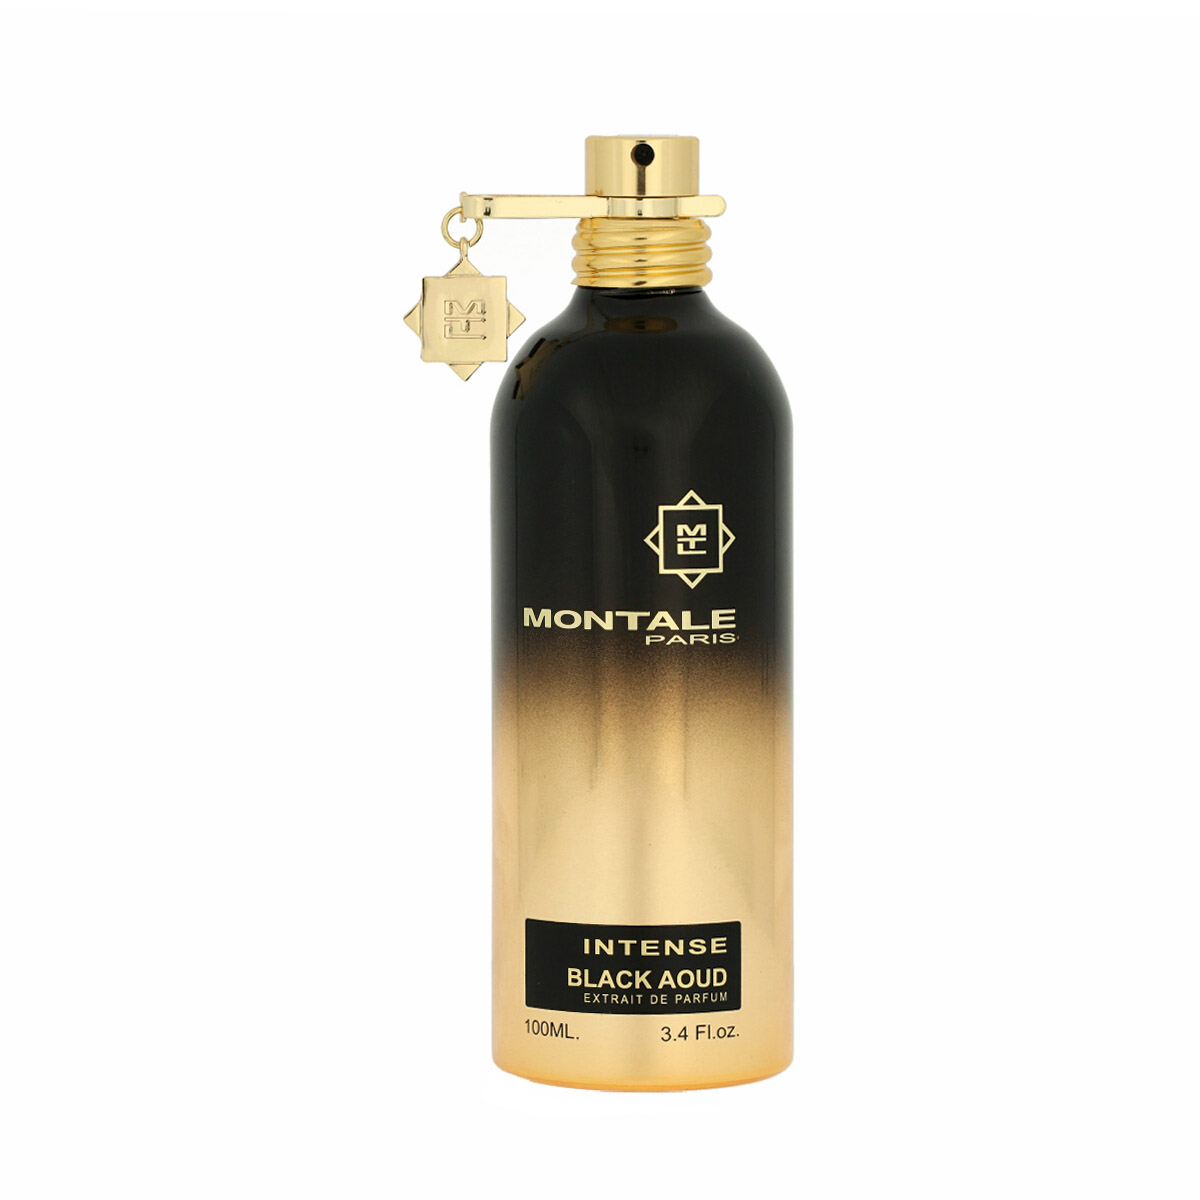 Montale Paris Intense Black Aoud Extrait De Parfum 5 ml NIŠINIAI kvepalų mėginukas (atomaizeris) Unisex Parfum